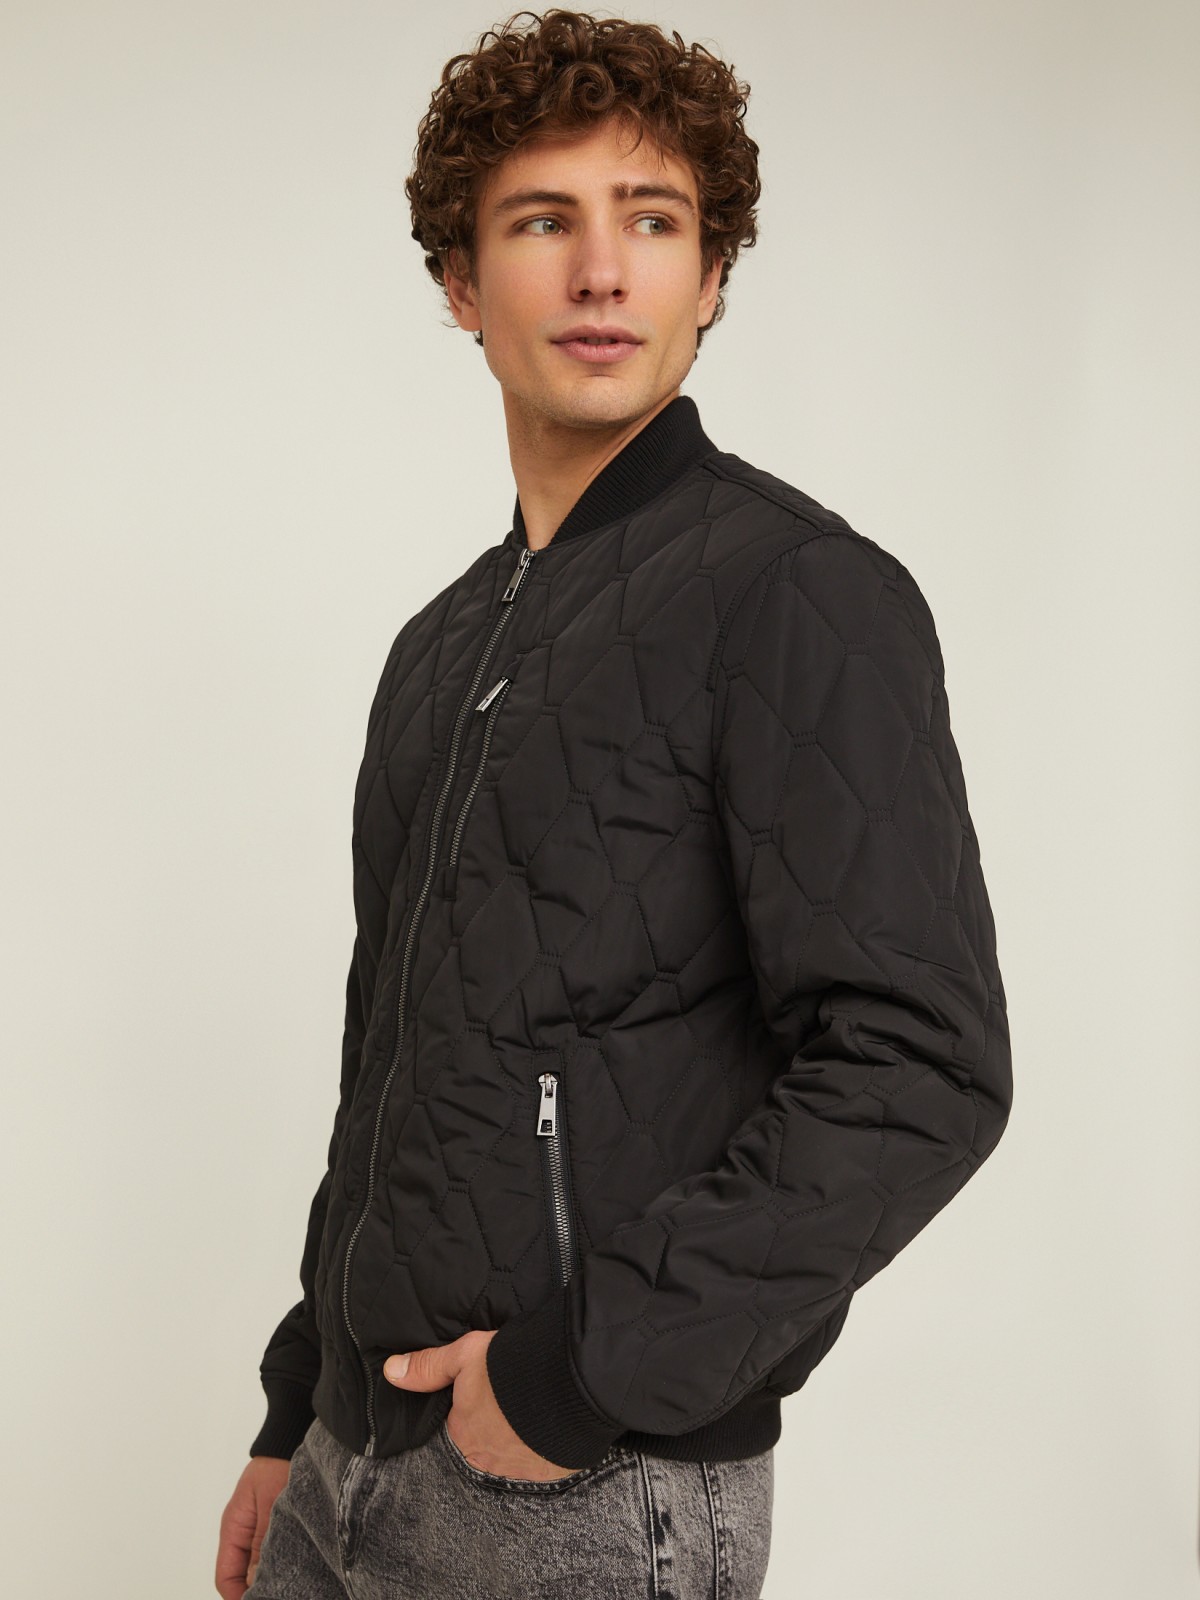 Утеплённая стёганая куртка-бомбер с воротником-стойкой zolla 014135139064, цвет черный, размер M - фото 3